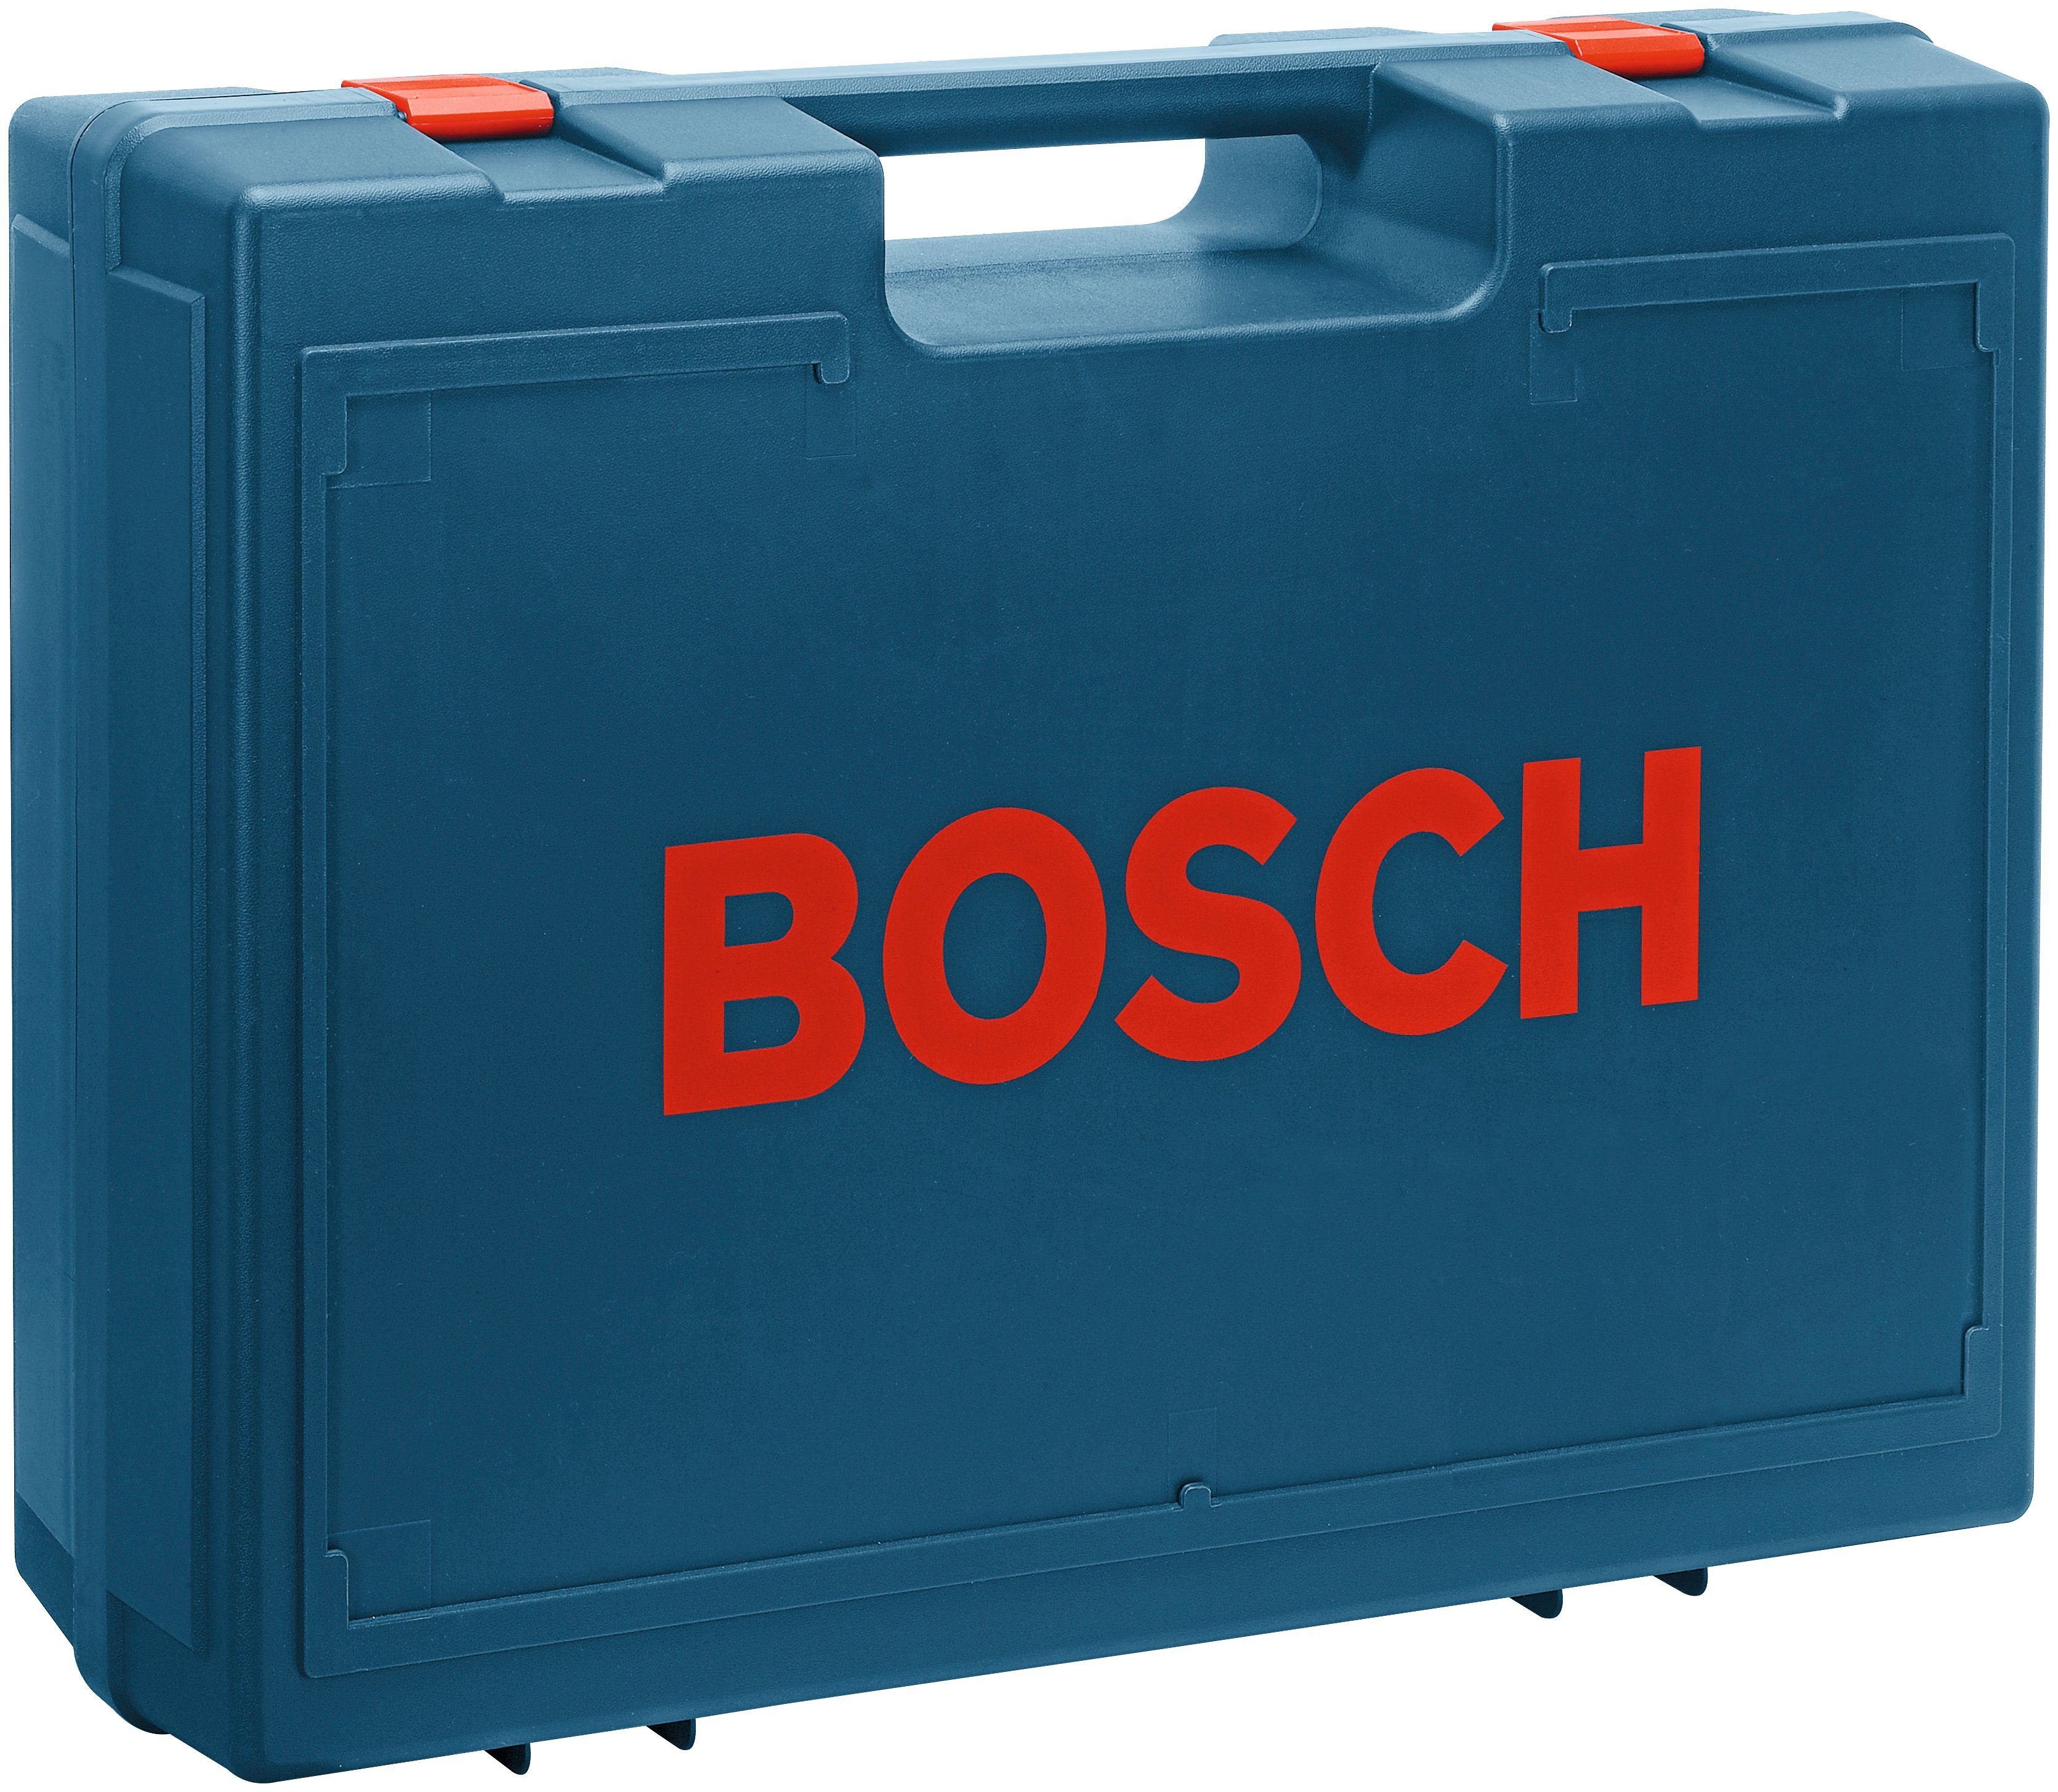 Bosch Professional Exzenterschleifer U/min 125-1 AE, GEX 24000